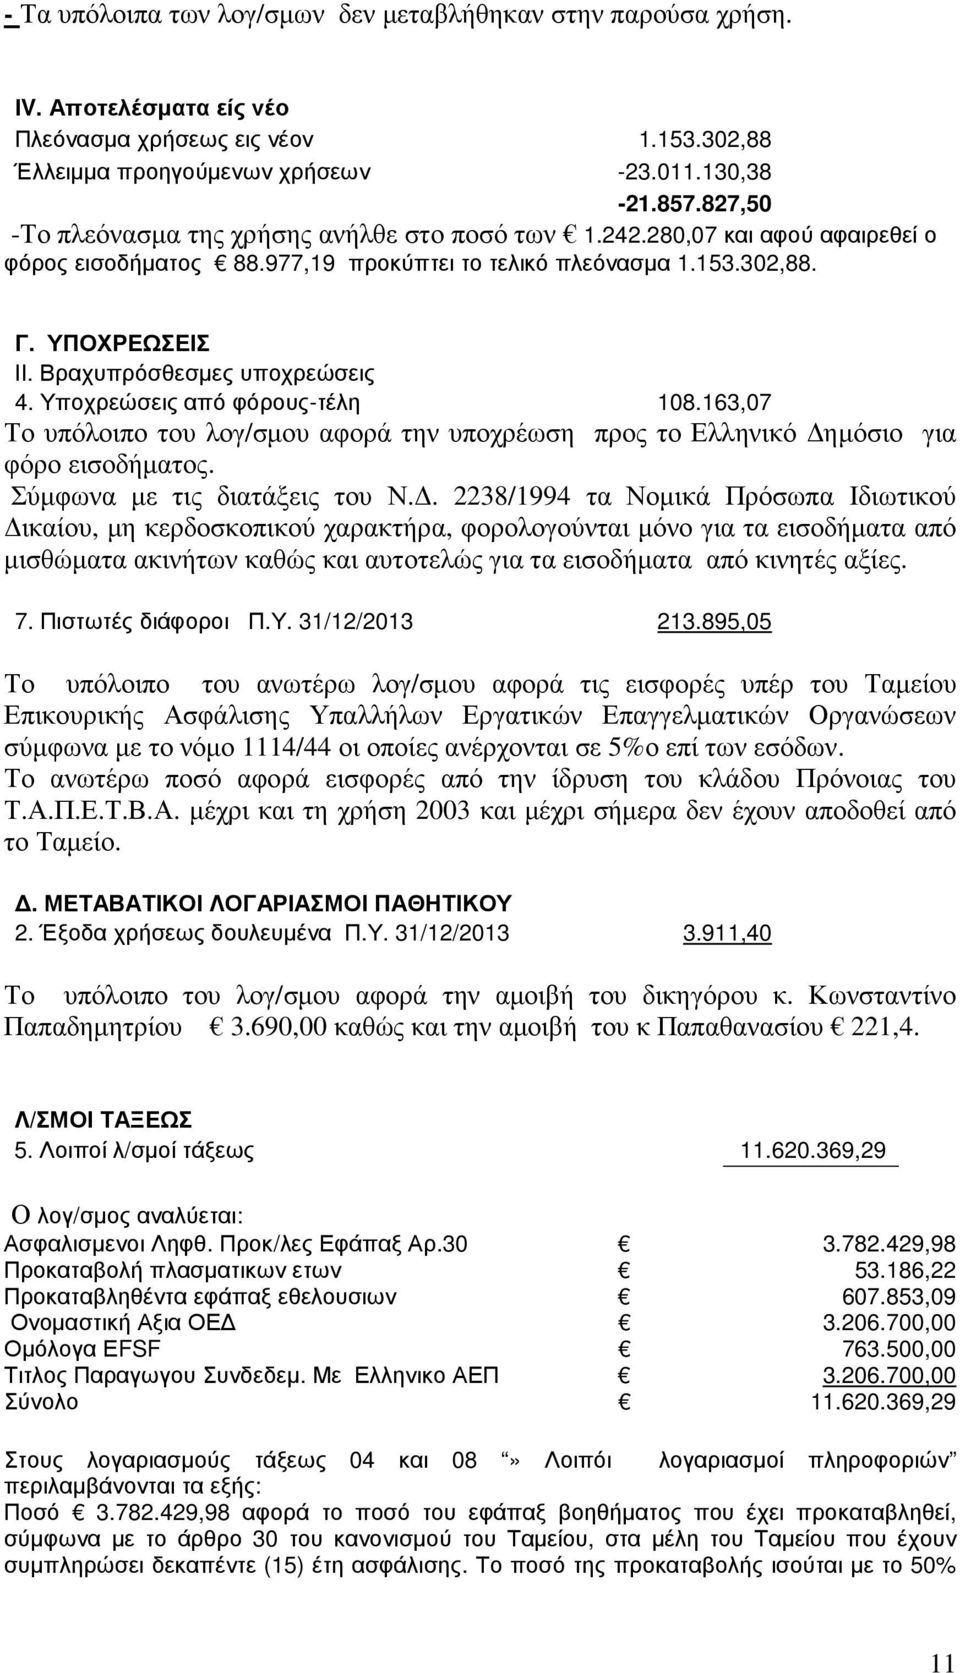 Βραχυπρόσθεσµες υποχρεώσεις 4. Υποχρεώσεις από φόρους-τέλη 108.163,07 Το υπόλοιπο του λογ/σµου αφορά την υποχρέωση προς το Ελληνικό ηµόσιο για φόρο εισοδήµατος. Σύµφωνα µε τις διατάξεις του Ν.